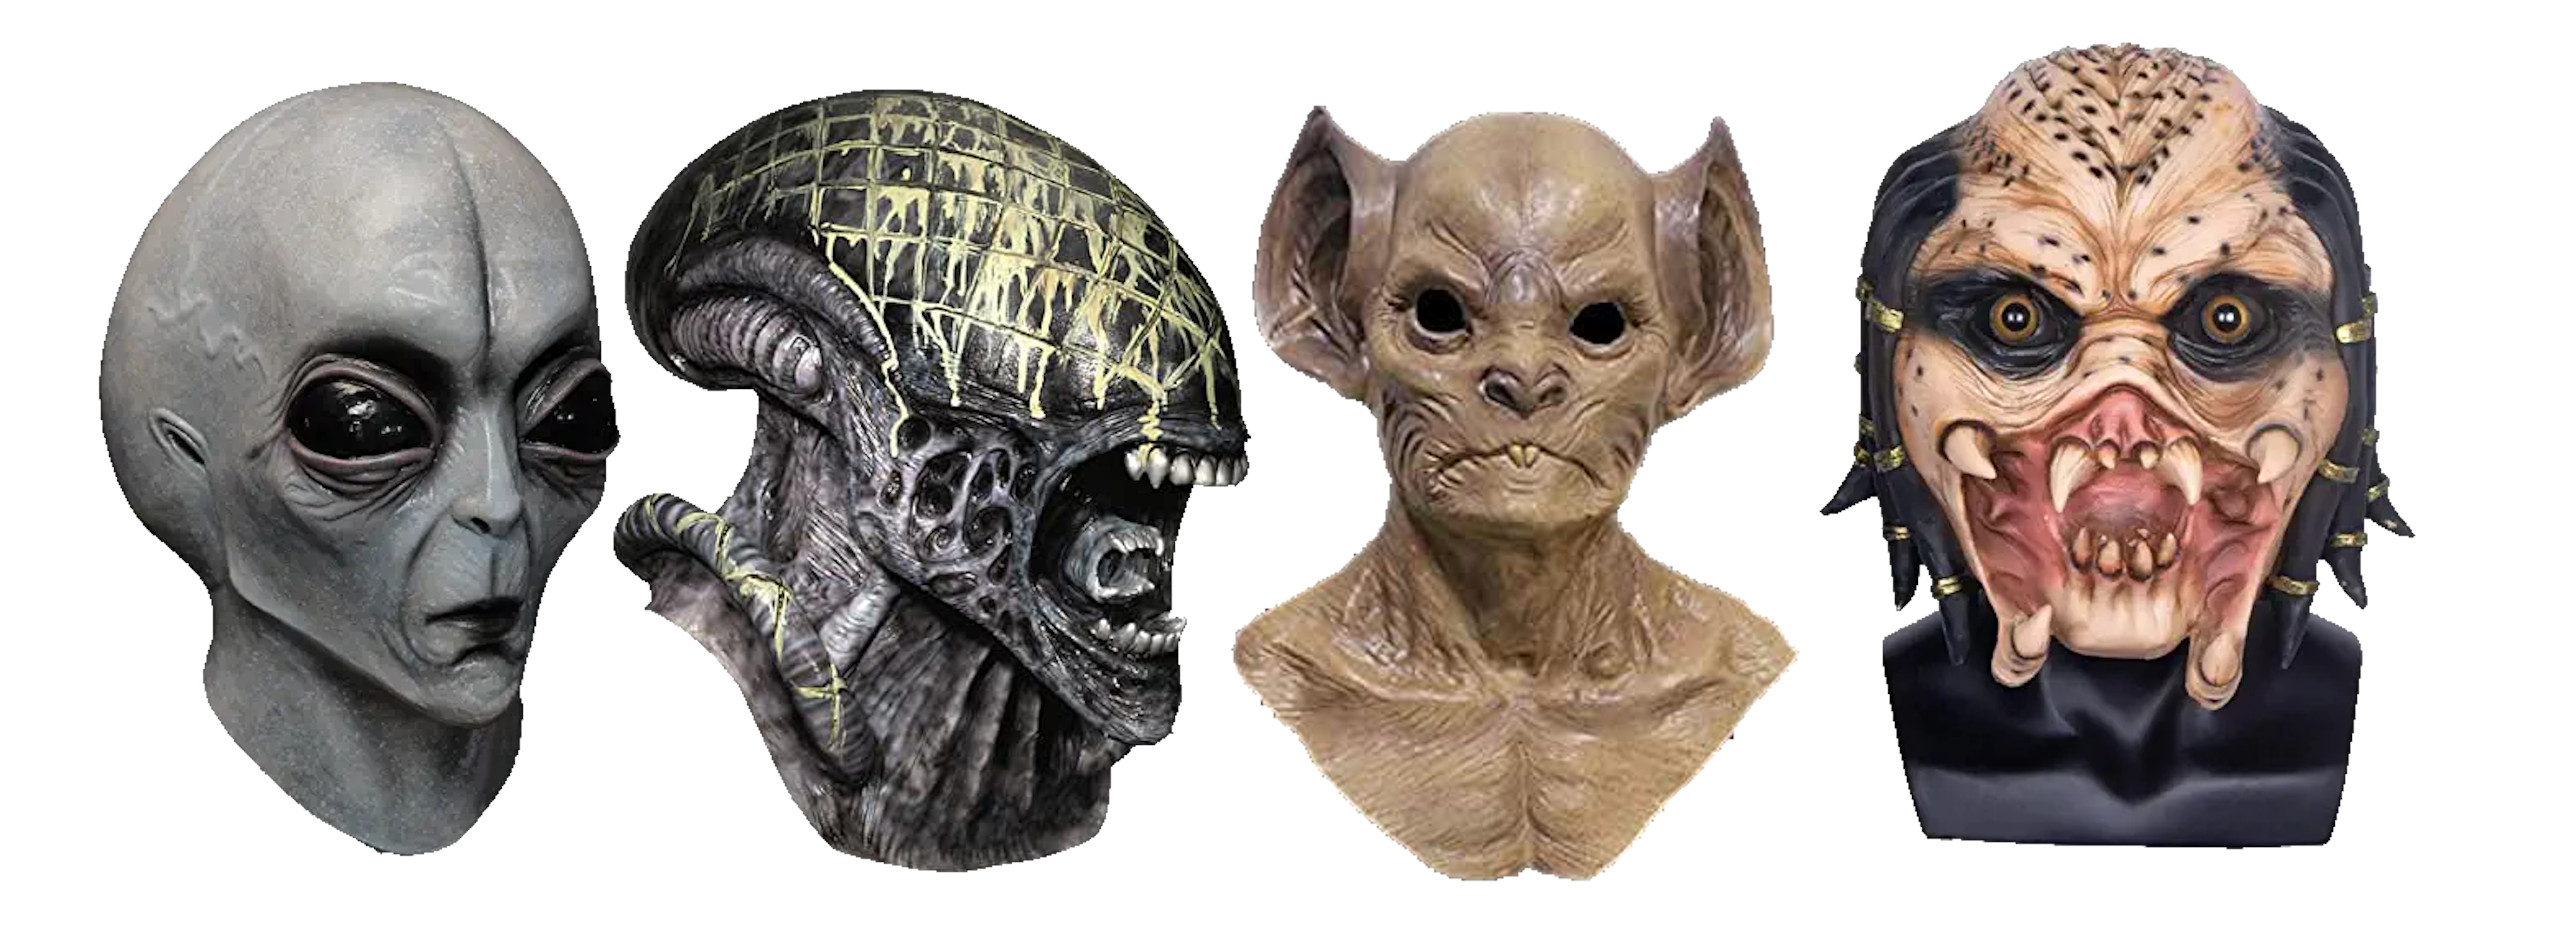 máscaras de aliens, máscaras de marcianos, máscaras de extraterrestres, máscaras de alienígenas